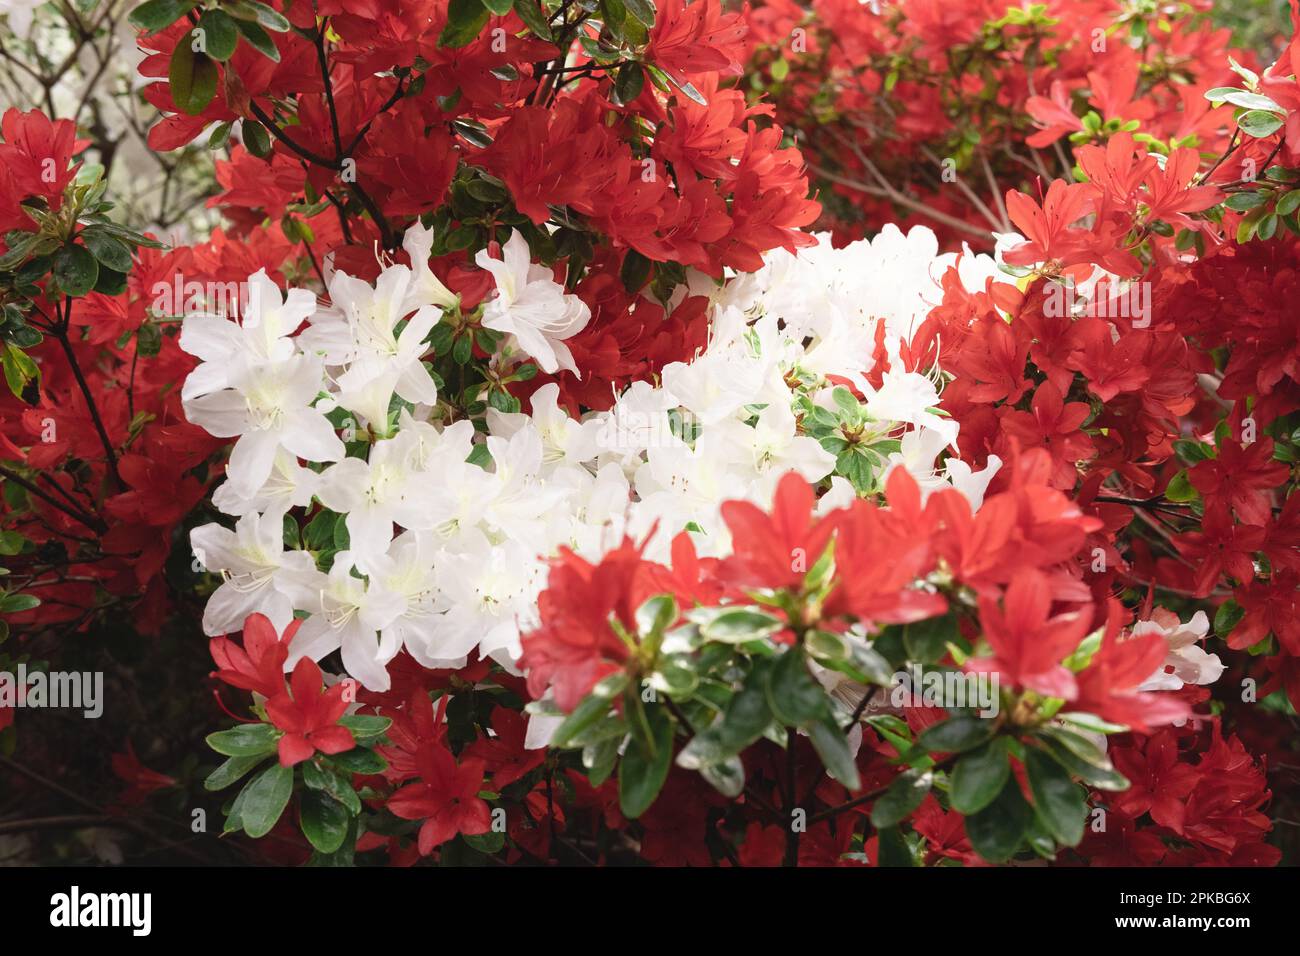 Beaucoup de belles fleurs blanches et rouges du jardin du Dr Neil à Édimbourg, en Écosse. Gros plan avec bokeh. Saison de printemps. Banque D'Images